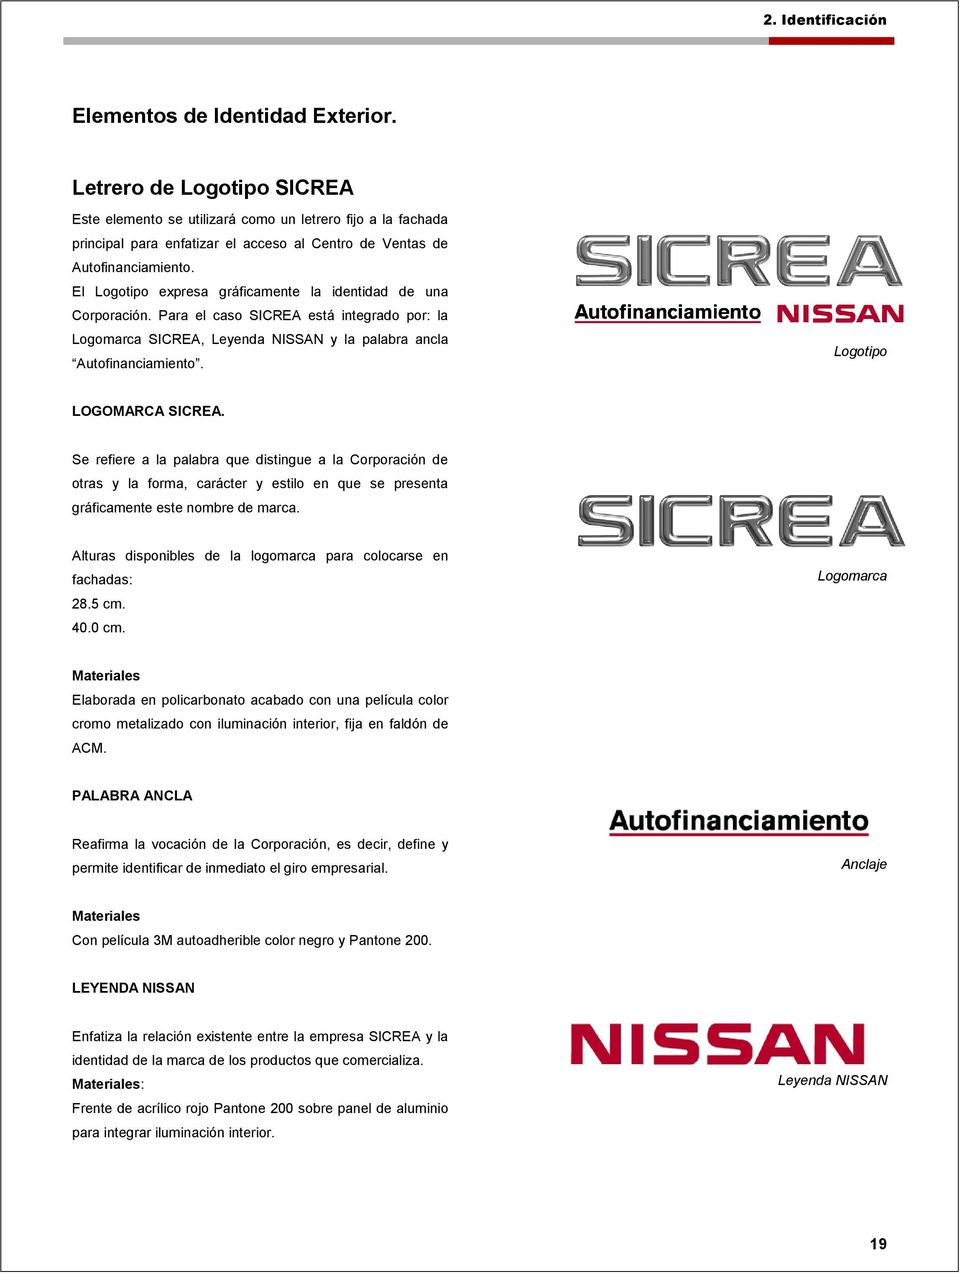 El Logotipo expresa gráficamente la identidad de una Corporación. Para el caso SICREA está integrado por: la Logomarca SICREA, Leyenda NISSAN y la palabra ancla Autofinanciamiento.